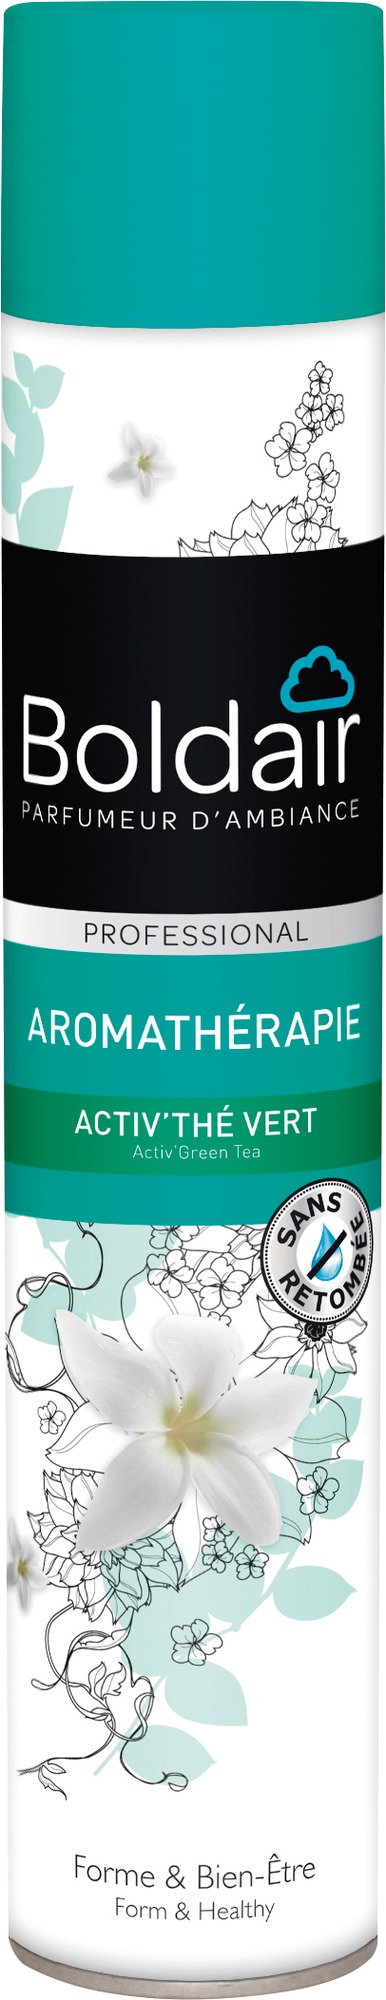 Désodorisant aromathérapie Forme et bien-être Boldair - 500 ml - Extraits végétaux de thé vert